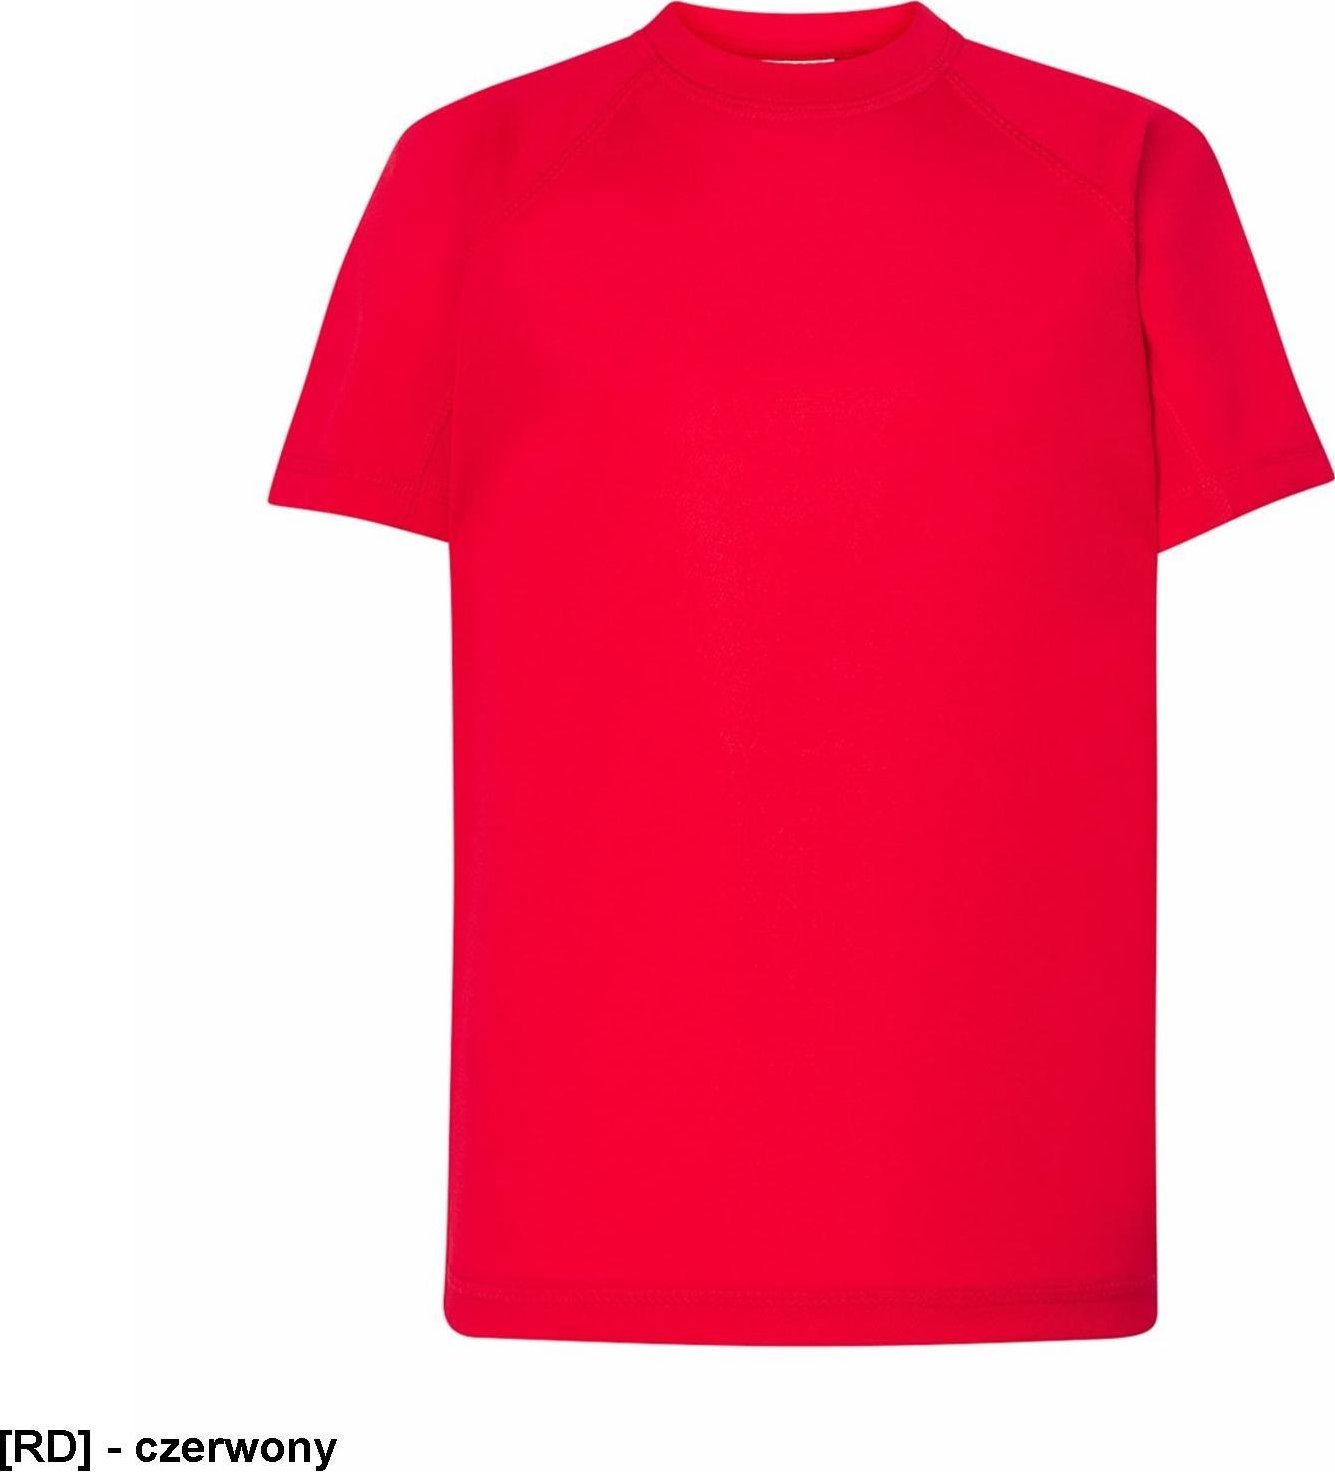 JHK TSRKSPOR SPORT KID - T-shirt dziecięcy z krótkim rękawem - czerwony - wzrost 110-152cm. 12-14